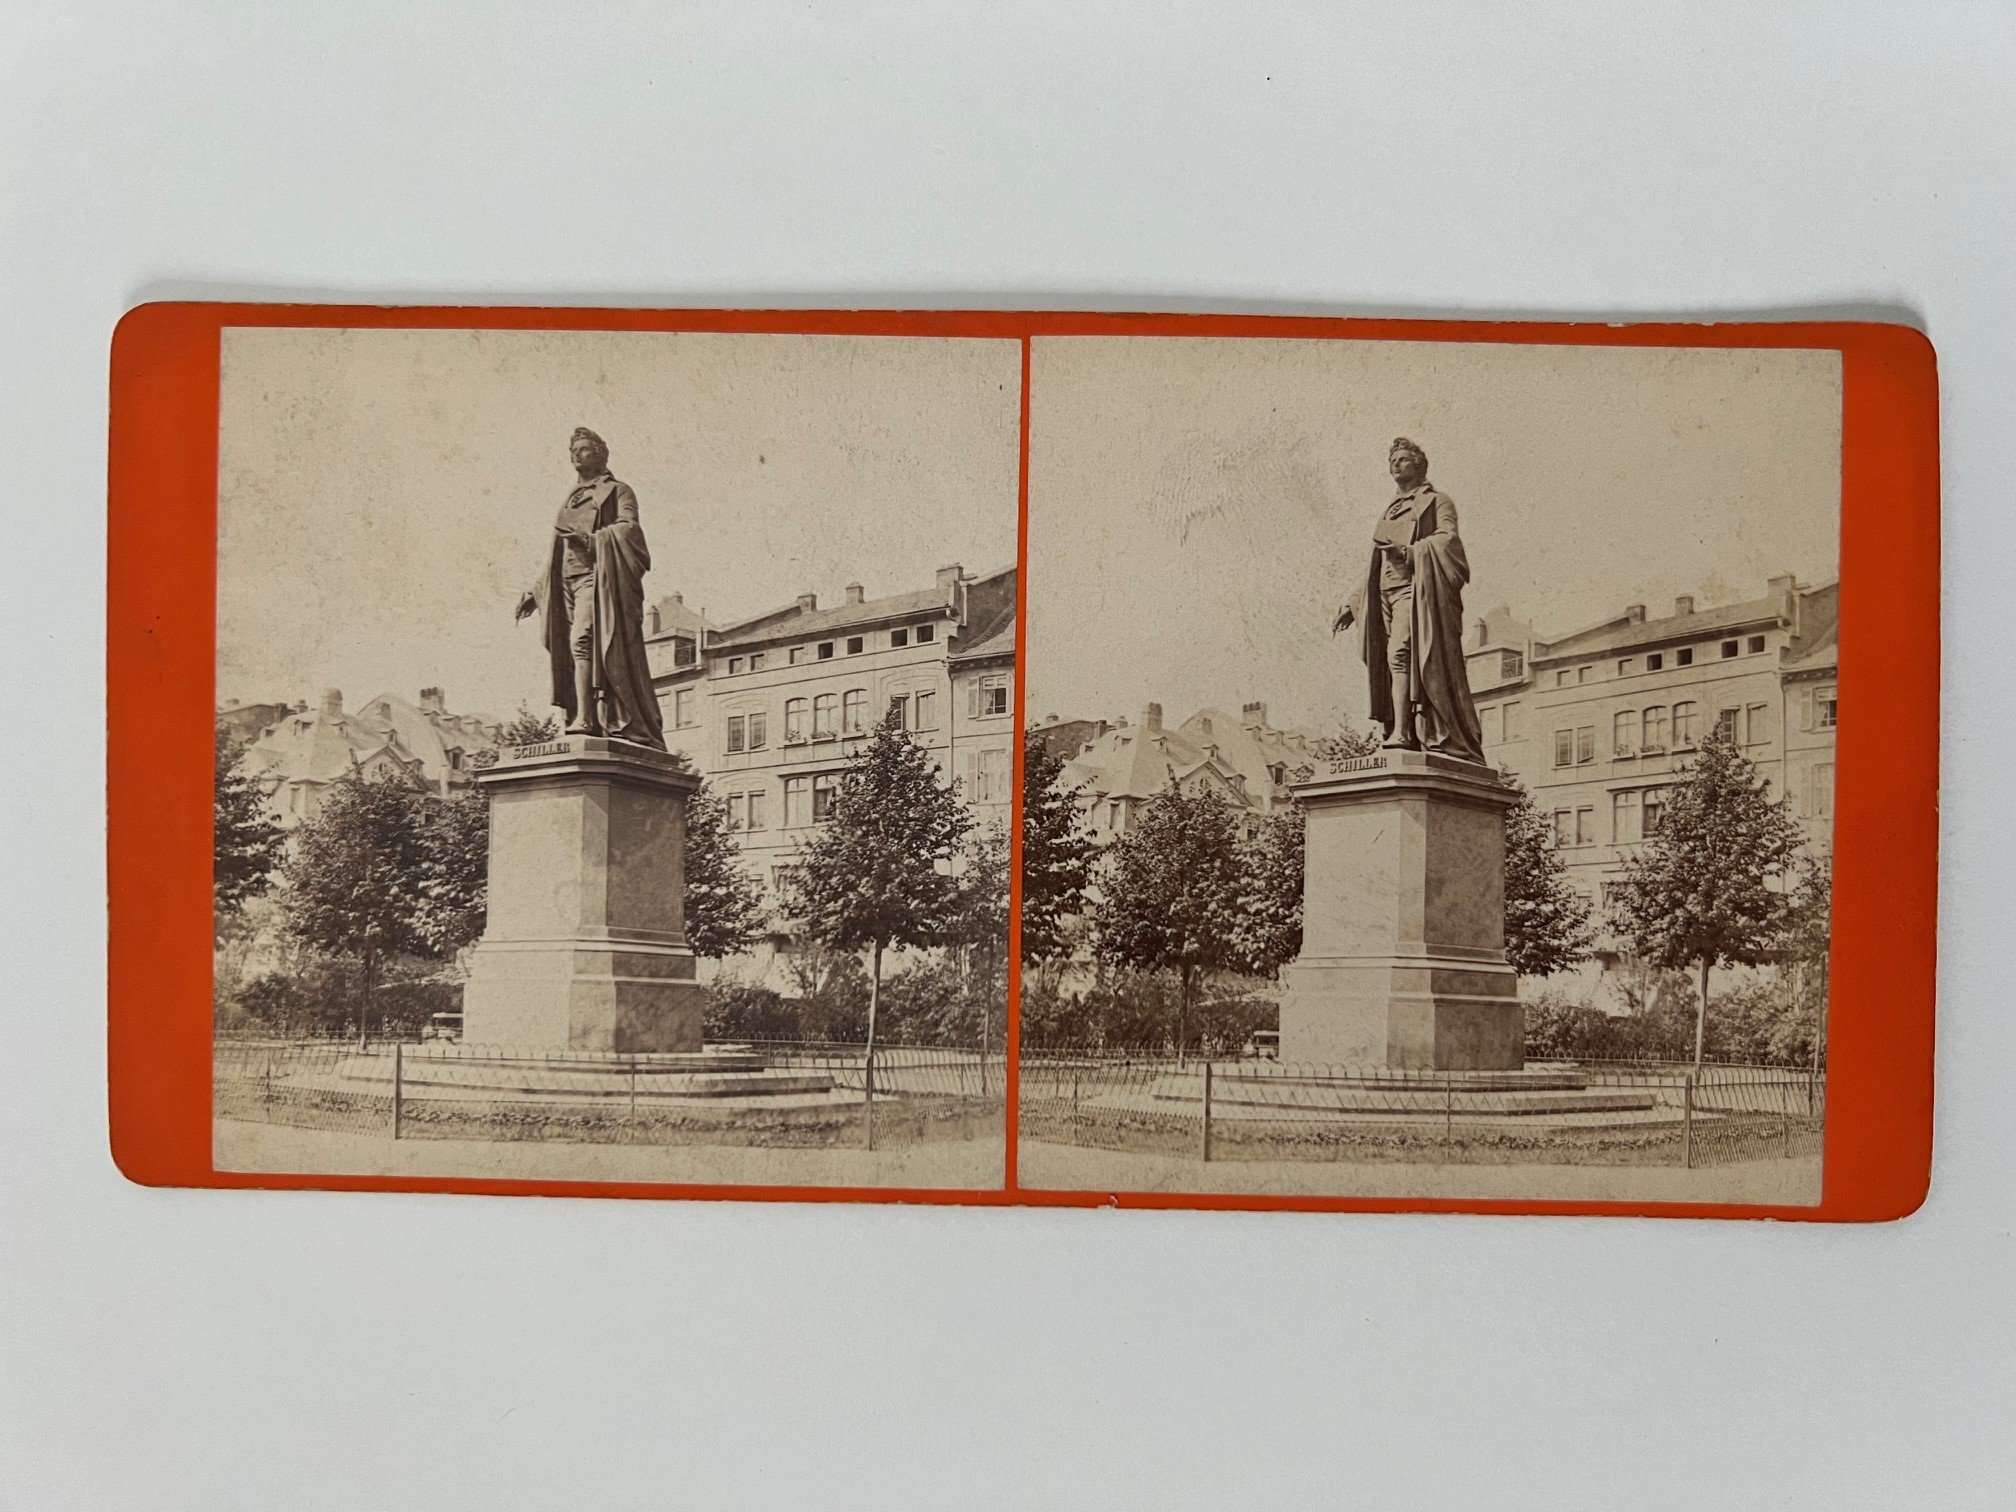 Stereobild, Frantisek Fridrich, Nr. 1, Schillerdenkmal, ca. 1870. (Taunus-Rhein-Main - Regionalgeschichtliche Sammlung Dr. Stefan Naas CC BY-NC-SA)